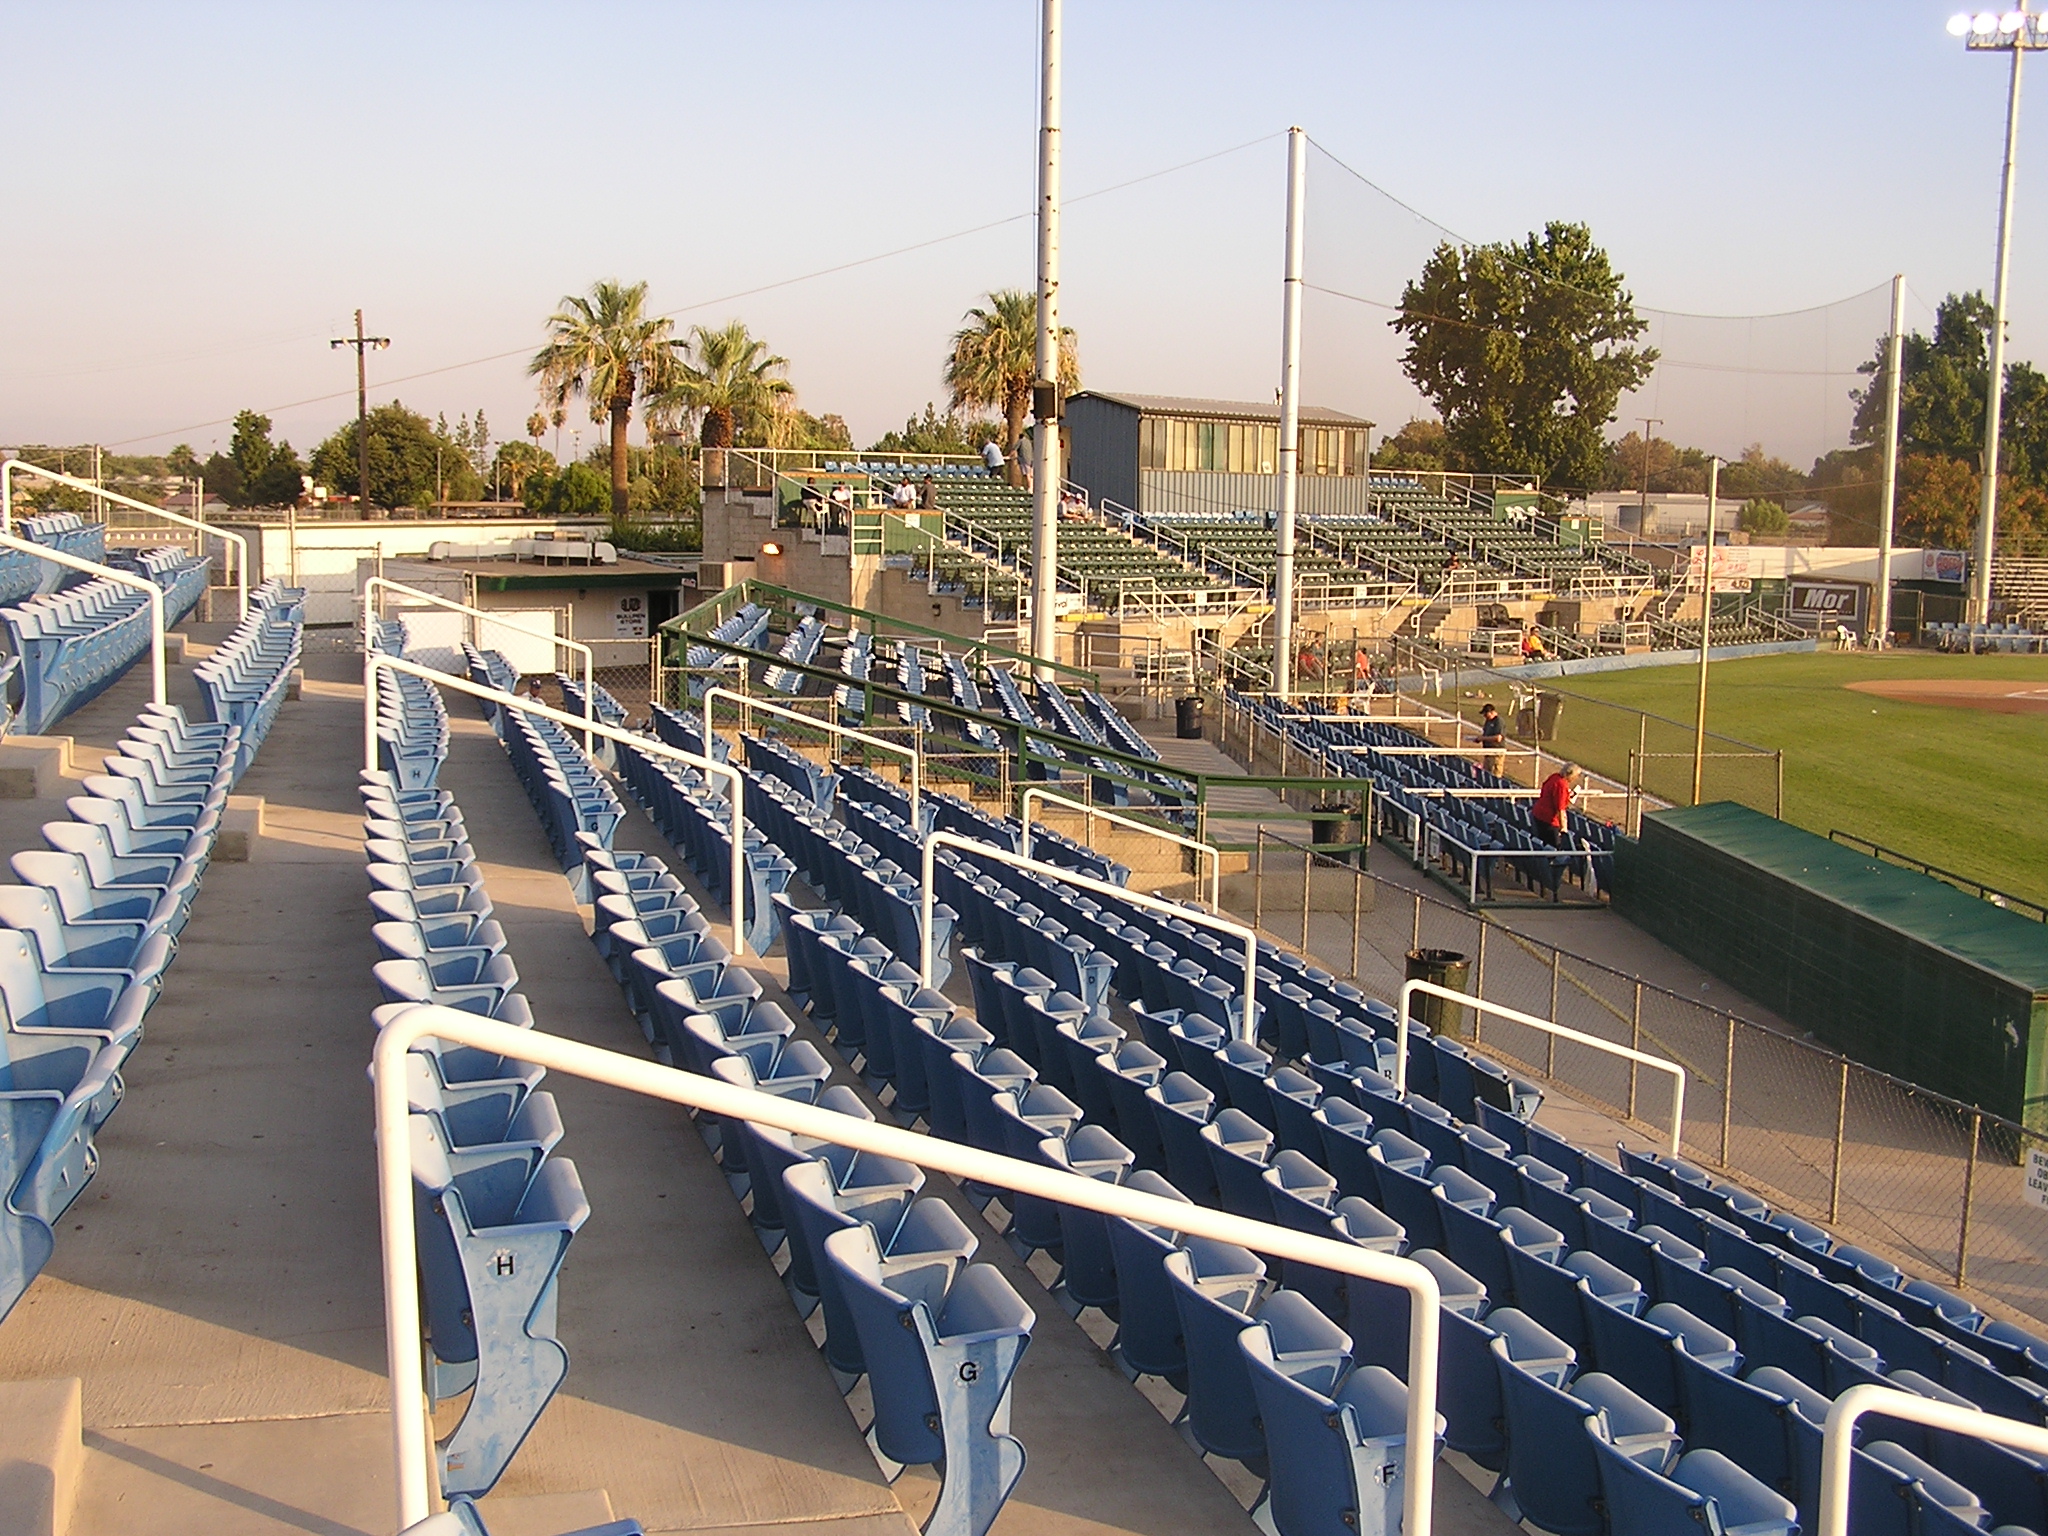 Seating at Sam Lynn Ballpark - Bakersfield, Ca.